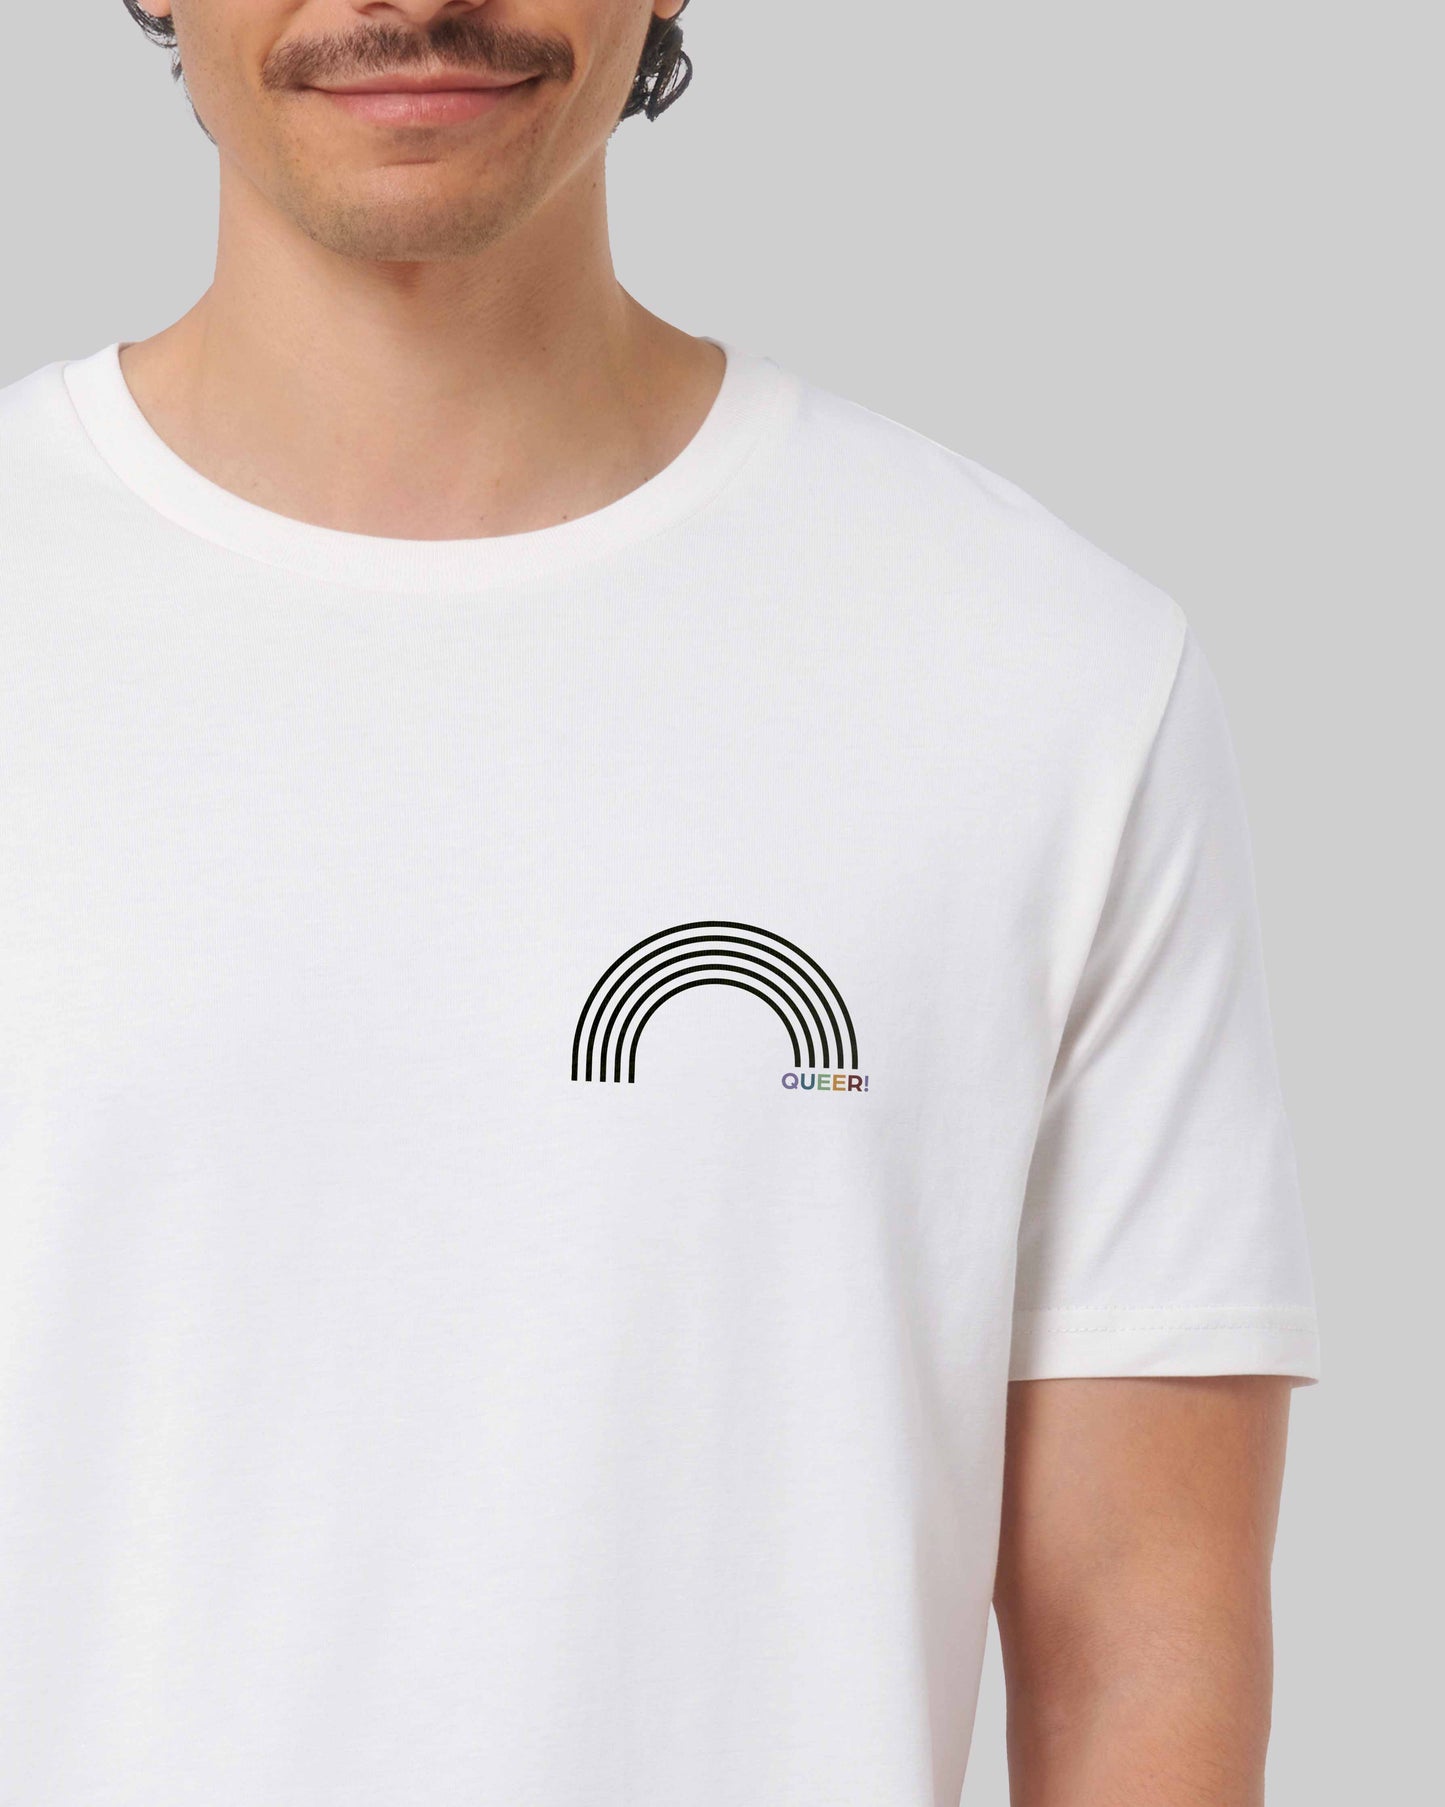 EINHORST® unisex Organic Shirt in Weiß mit dem Motiv "queer Regenbogen" in der Kombination schwarzer Regenbogen mit bunter Schrift, Bild von männlicher Person mit Shirt